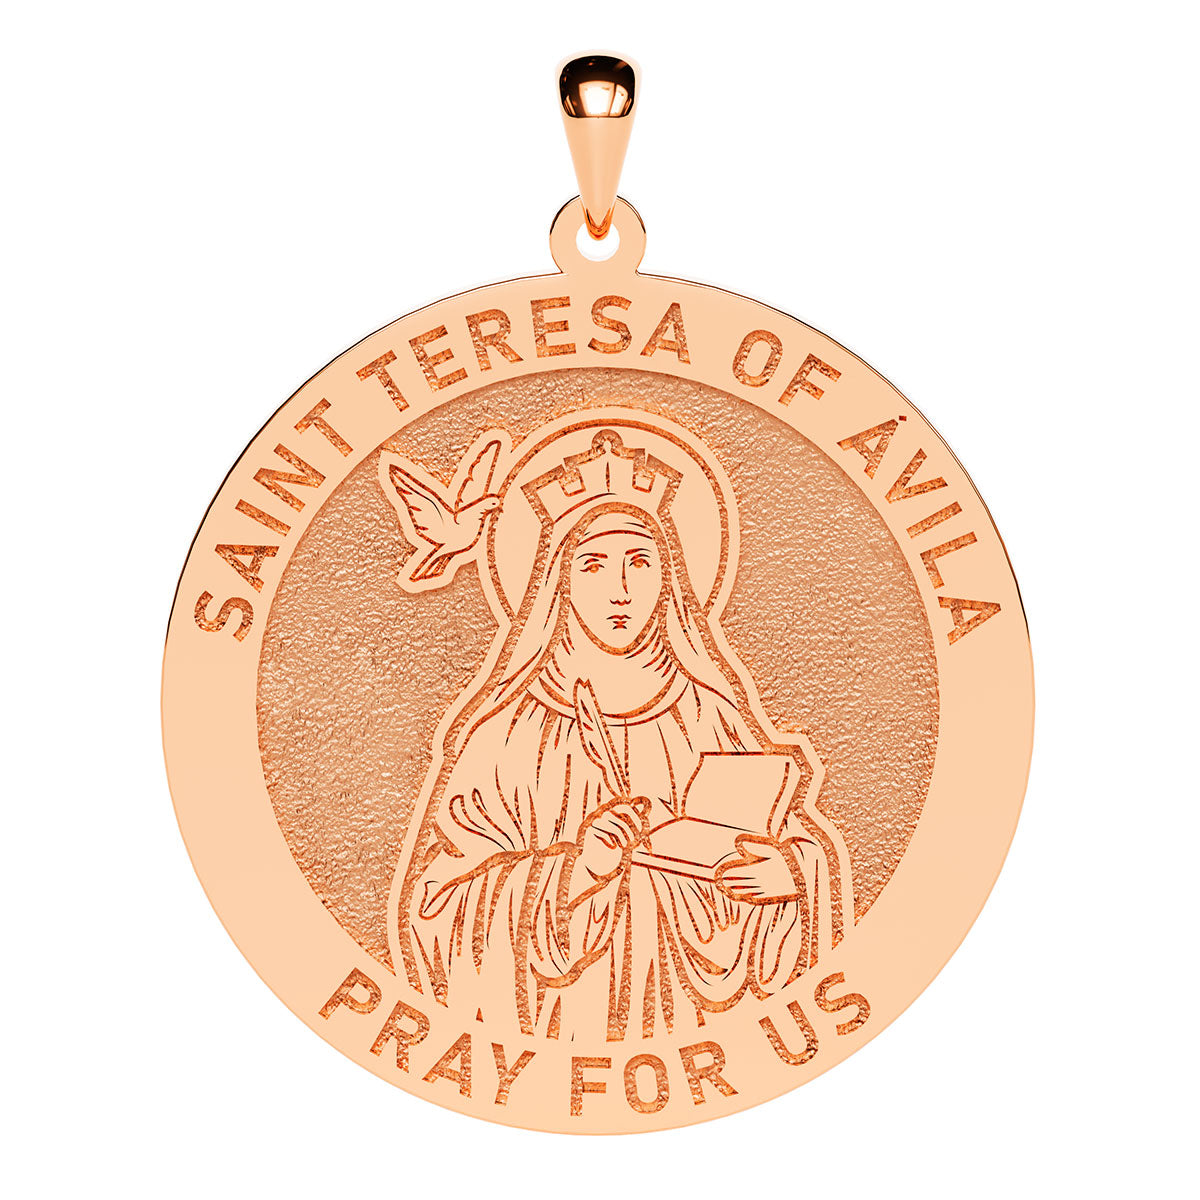 Saint Teresa of Avila Round Religious Medal